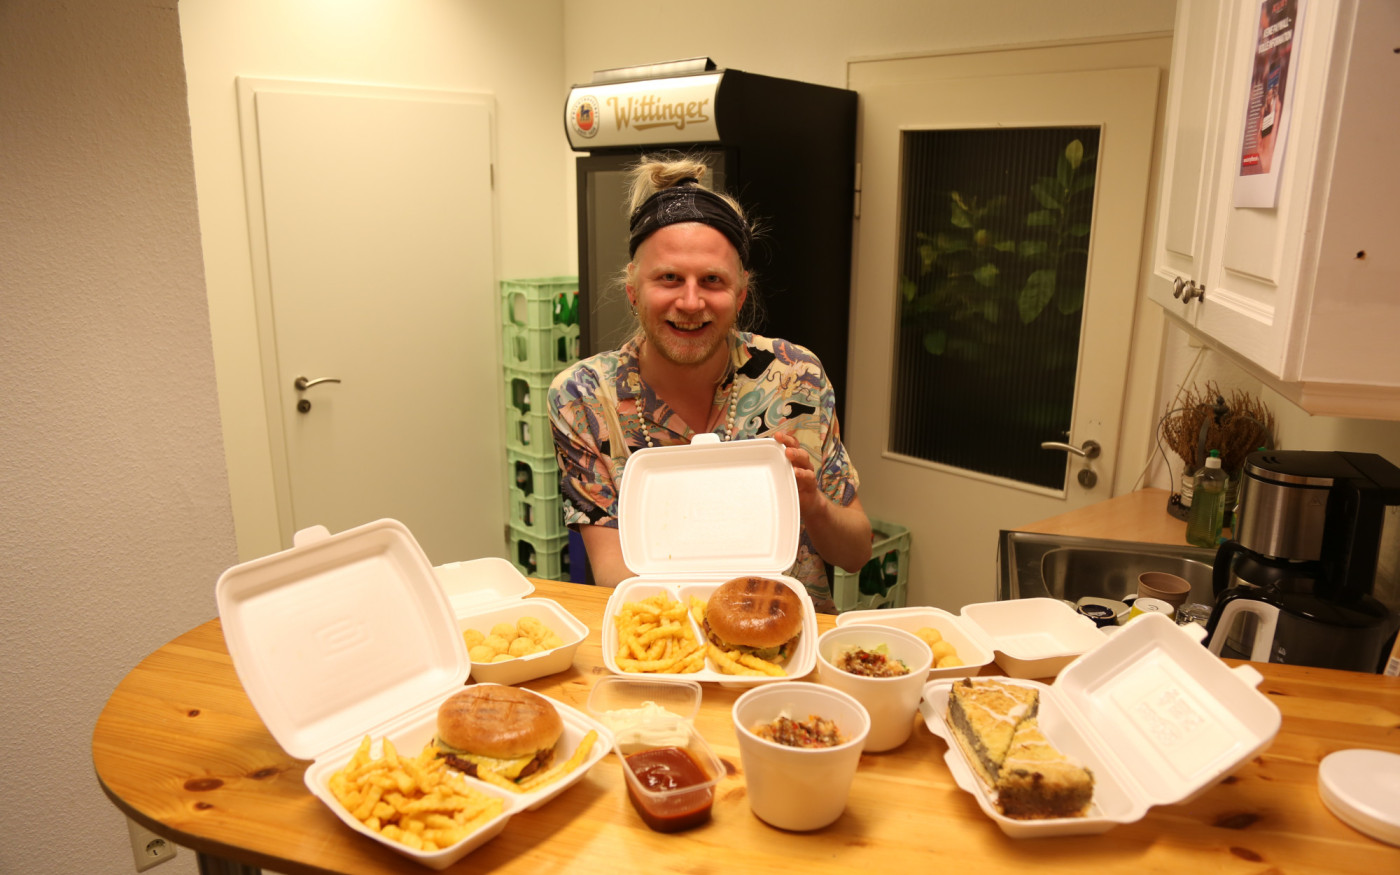 Von wegen Henssler: Hepe ist der Burgerkönig - Das Freizeitzentrum Malibu liefert fantastische Veggie-Snacks im Lockdown